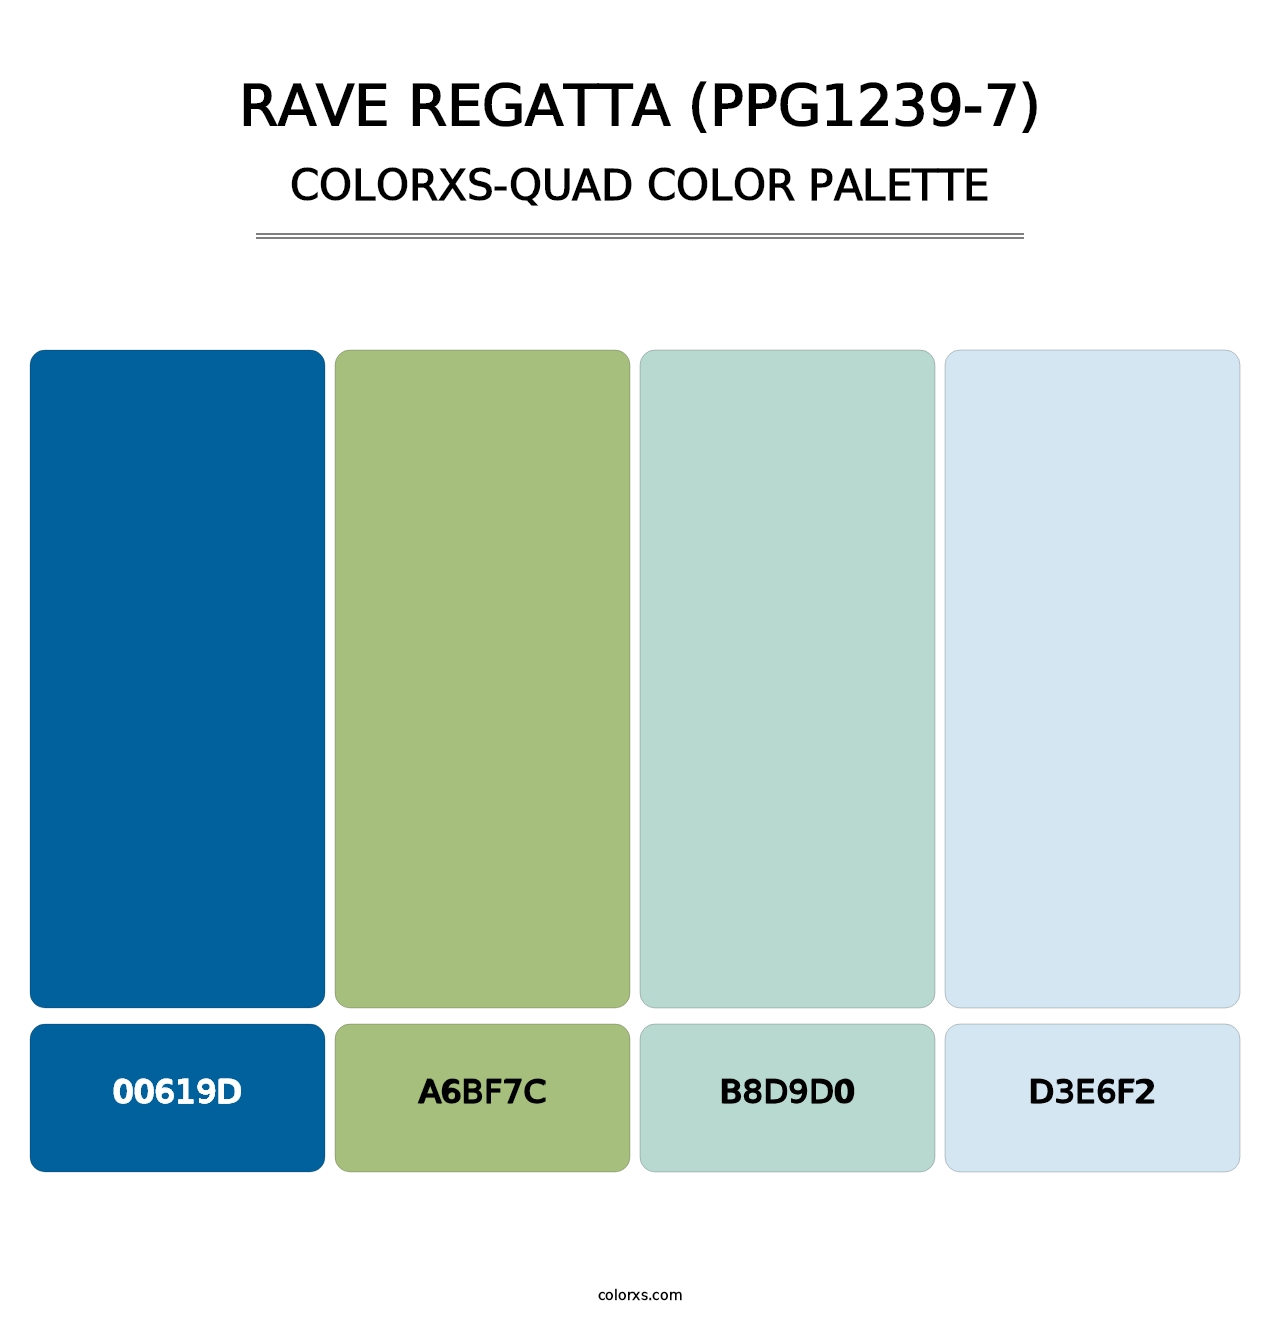 Rave Regatta (PPG1239-7) - Colorxs Quad Palette